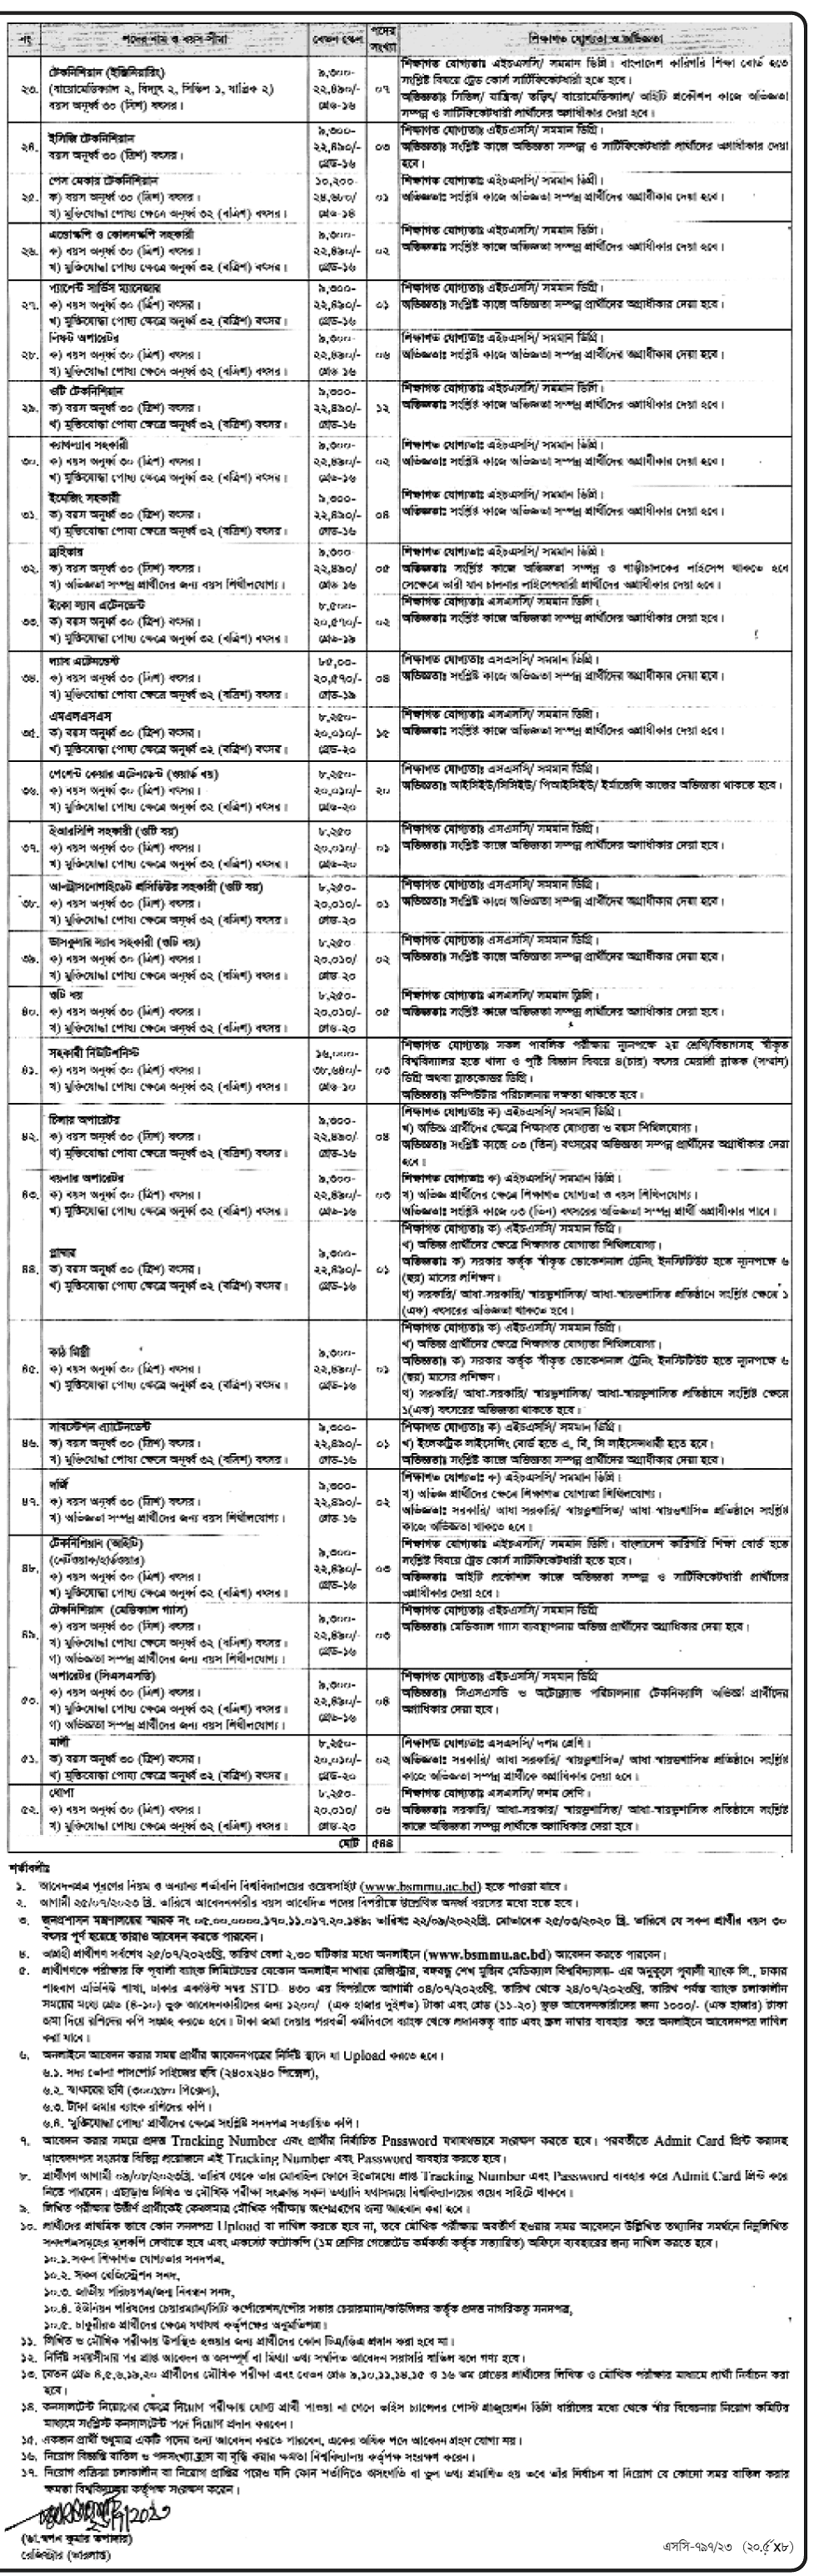 বঙ্গবন্ধু শেখ মুজিব মেডিকেল বিশ্ববিদ্যালয় নিয়োগ বিজ্ঞপ্তি ২০২৩- ৫৪৪ টি  শূন্য পদে নিয়োগ দিবে | Bangabandhu Sheikh Mujib Medical University Recruitment Circular 2023- 544 Vacancies